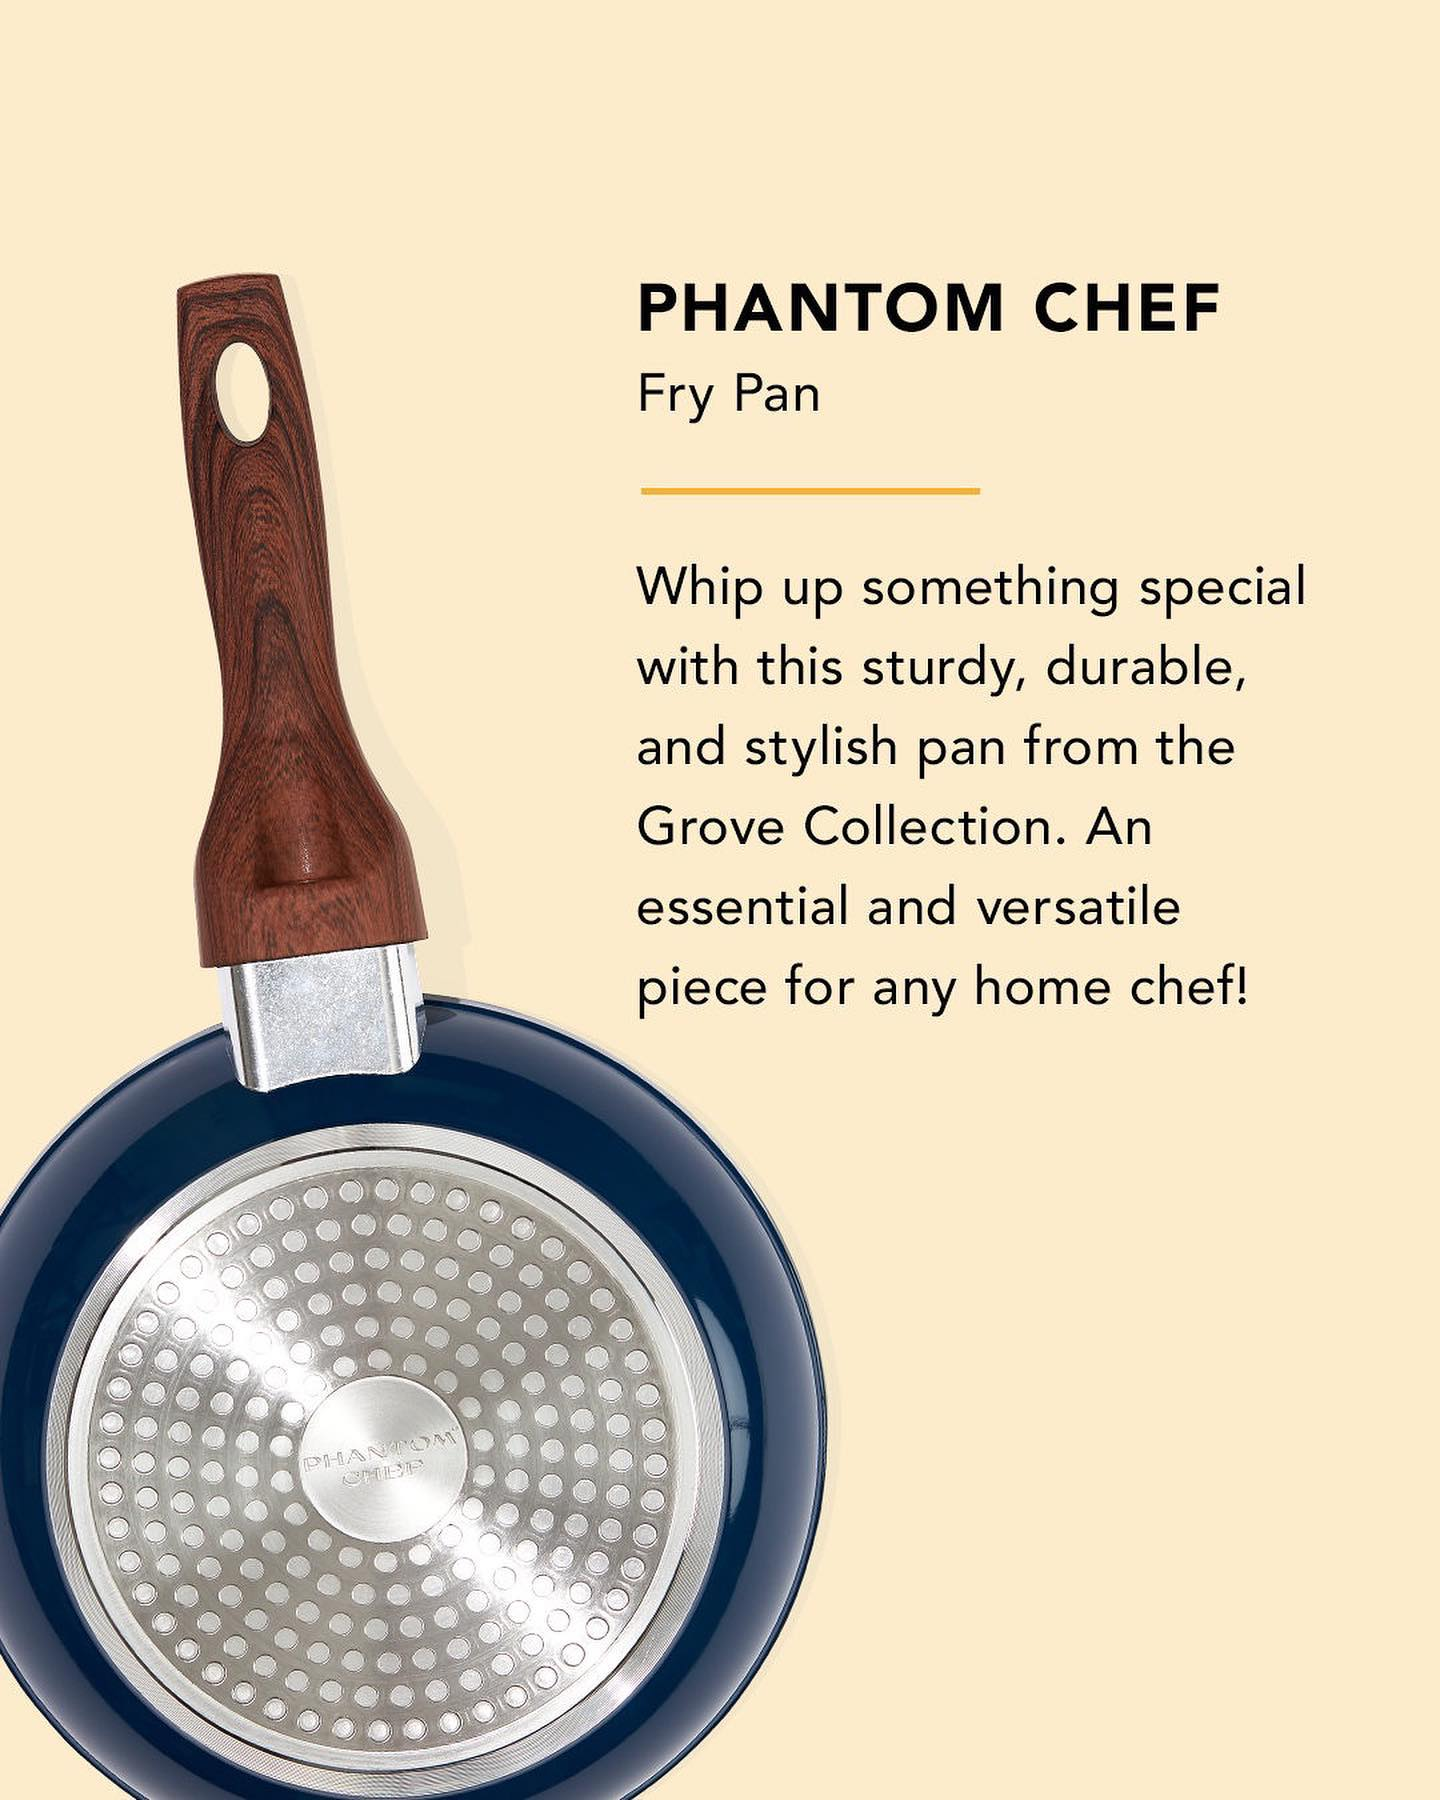 Fry Pan by Phantom Chef - FabFitFun